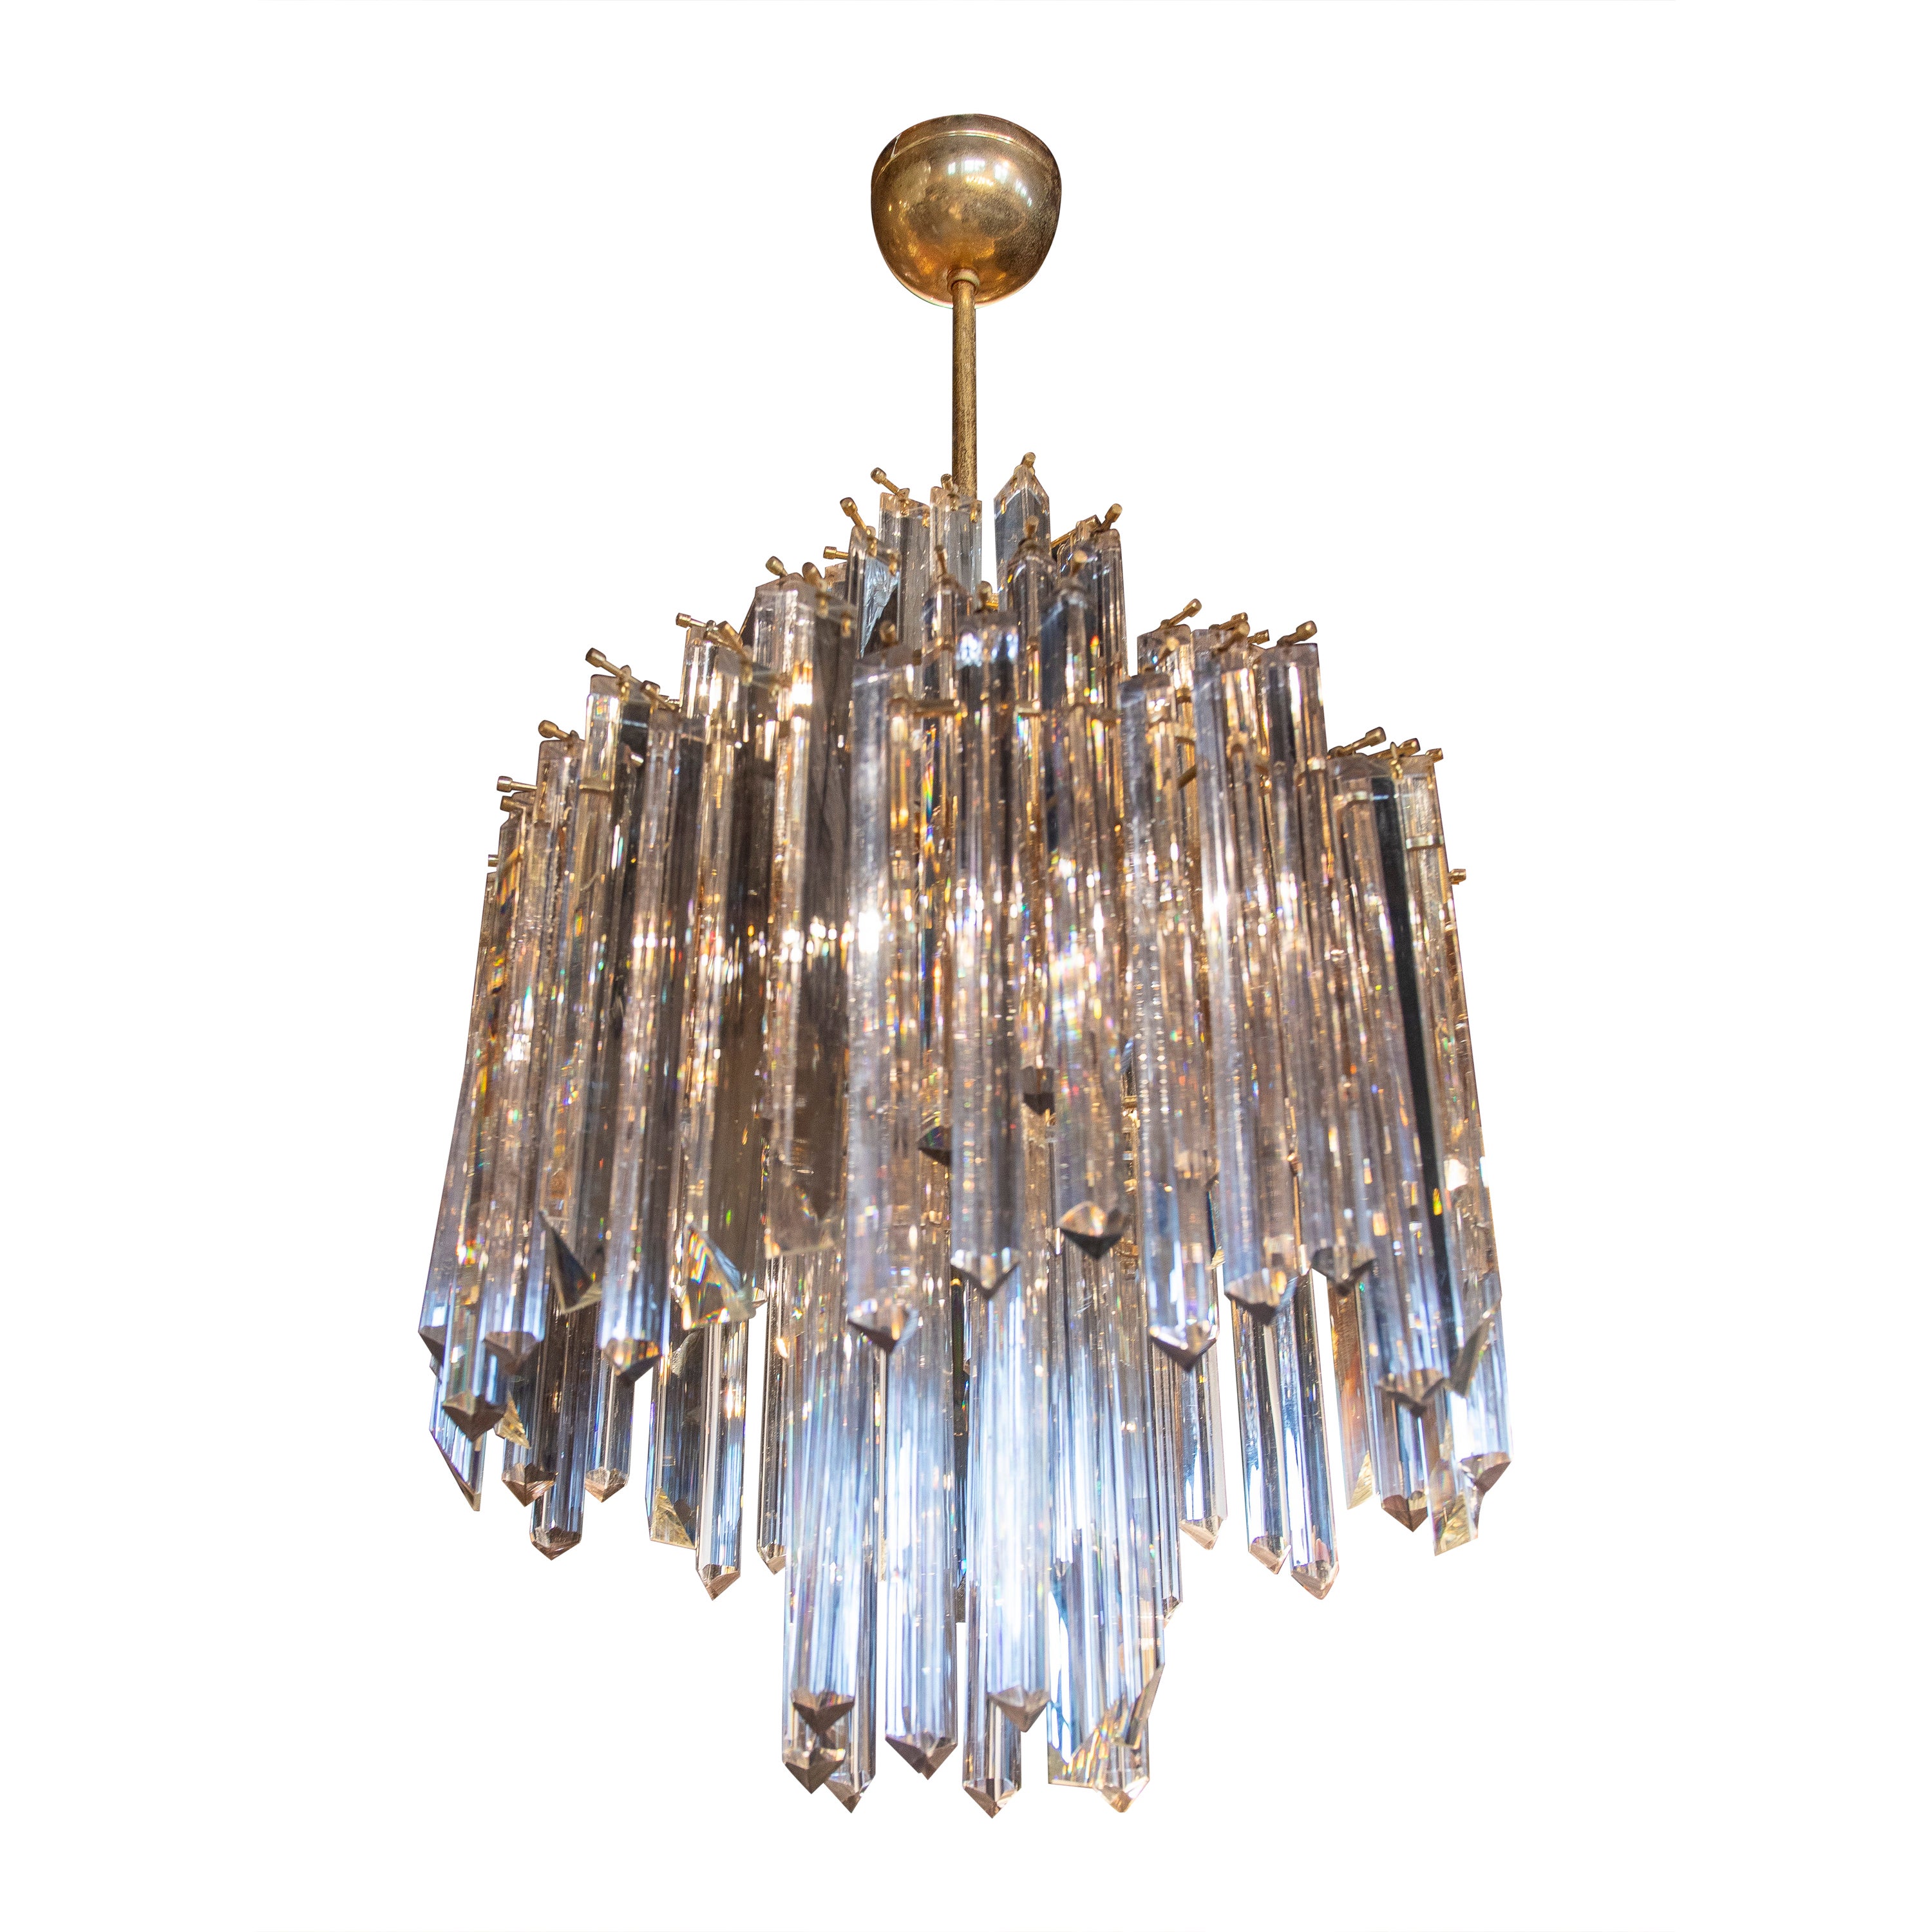 Lampe italienne composée de cristaux allongés et d'une structure en métal doré